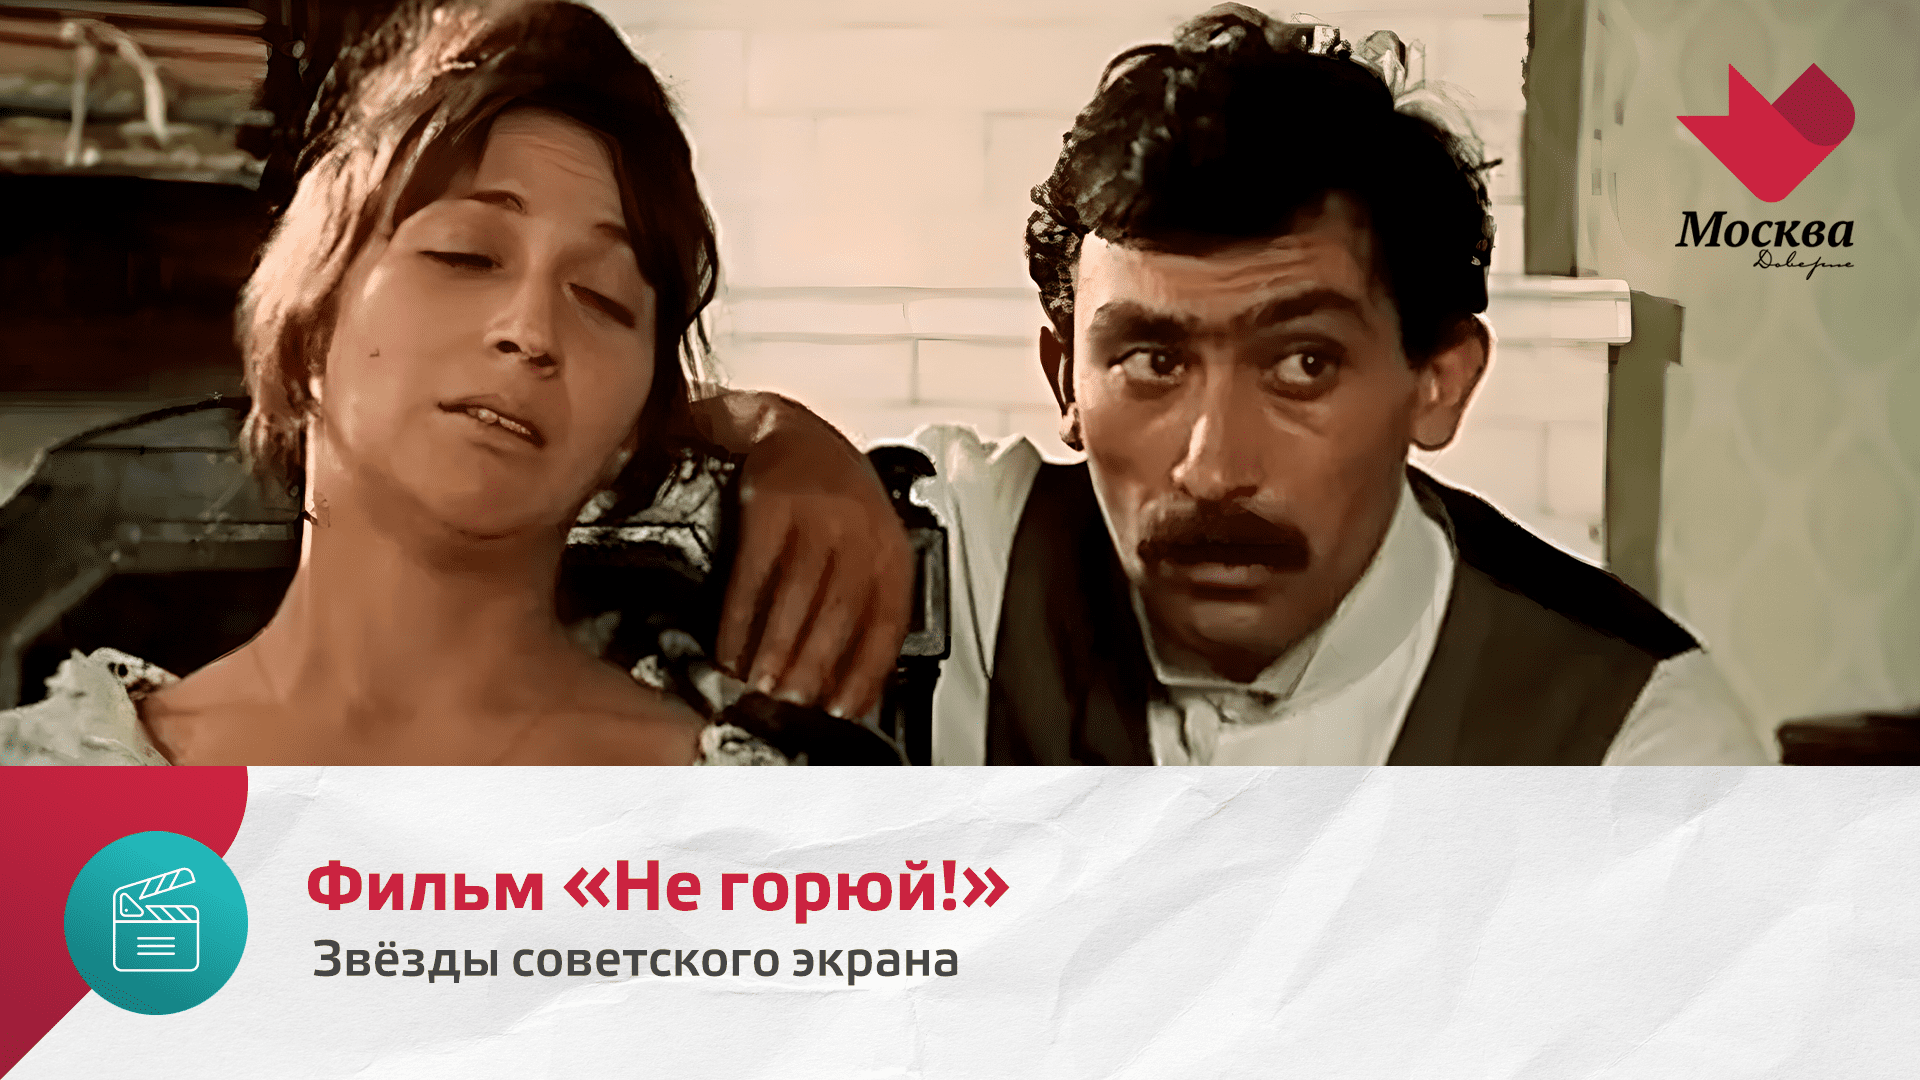 Фильм «Не горюй!» | Звезды советского экрана